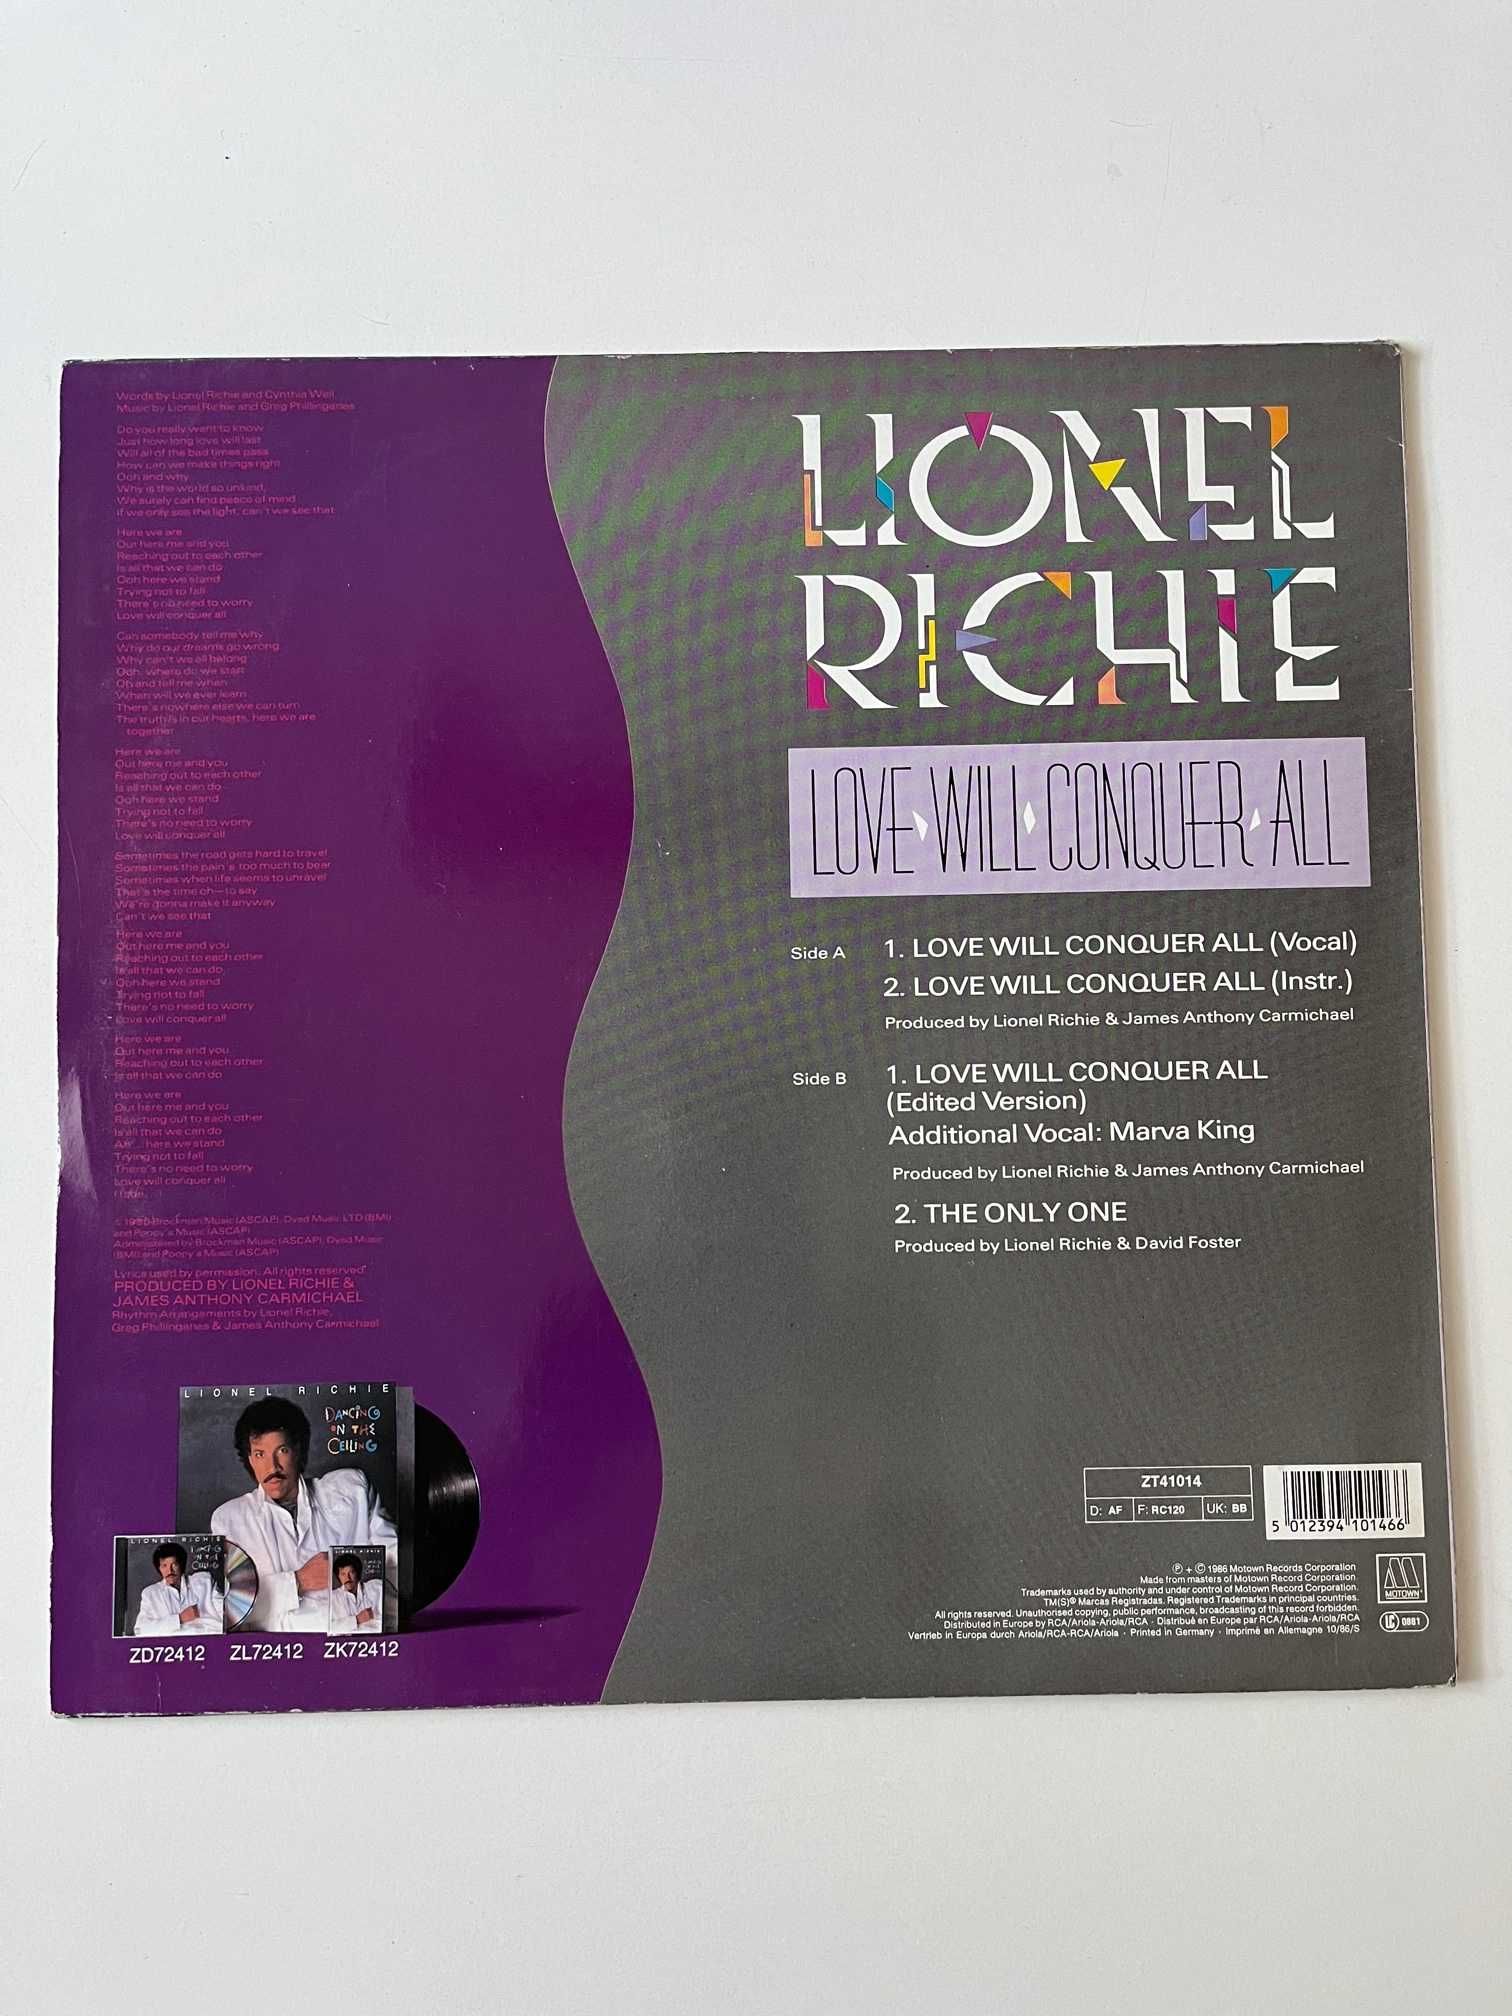 Lionel Richie Love Will Conquer All 1986 winyl